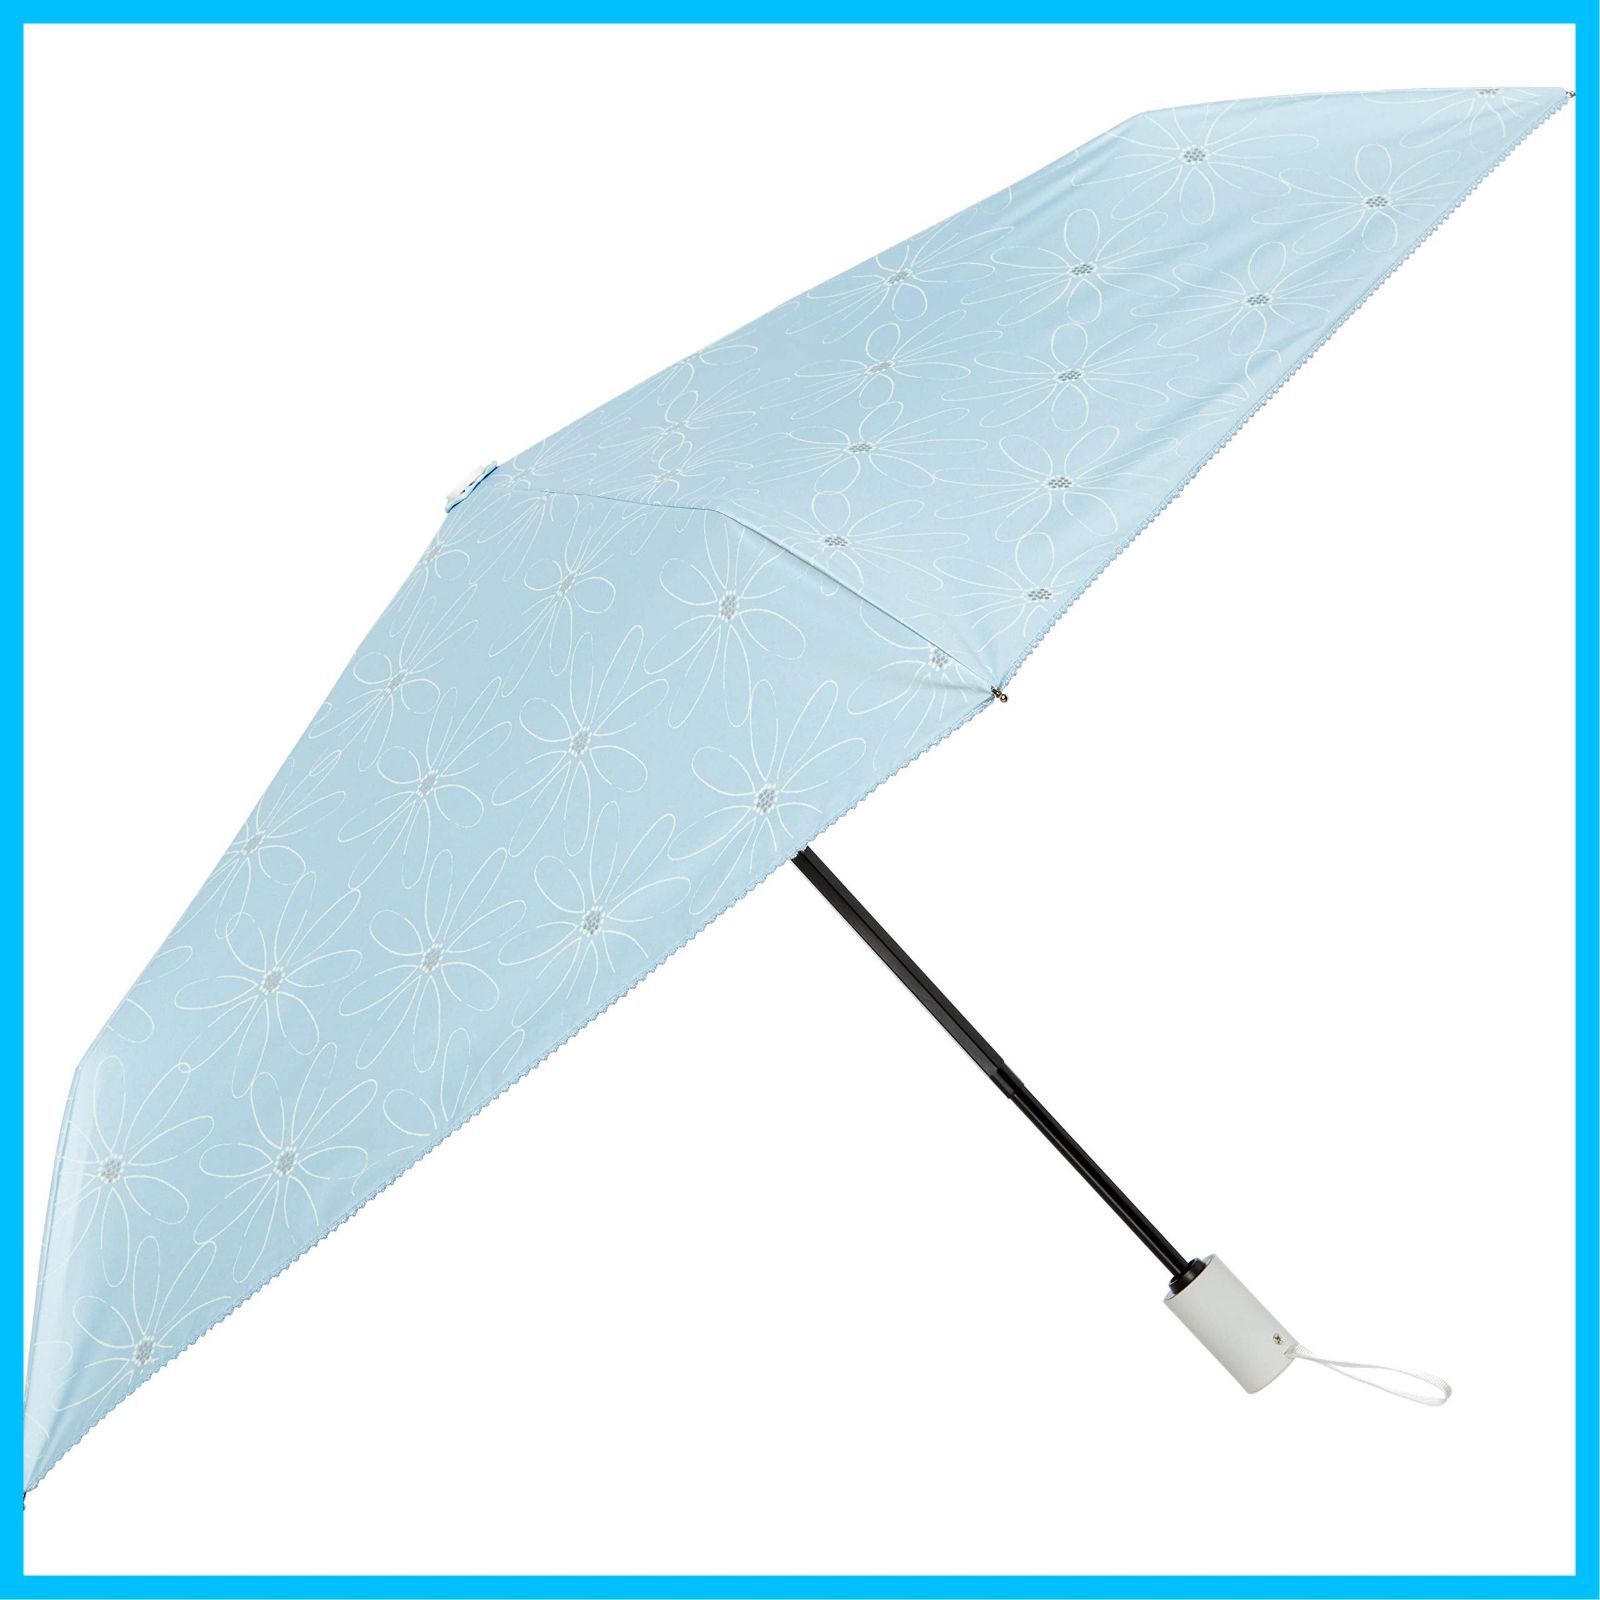 【特価商品】[ムーンバット] estaa(エスタ) 花柄 自動開閉傘 雨傘 折り